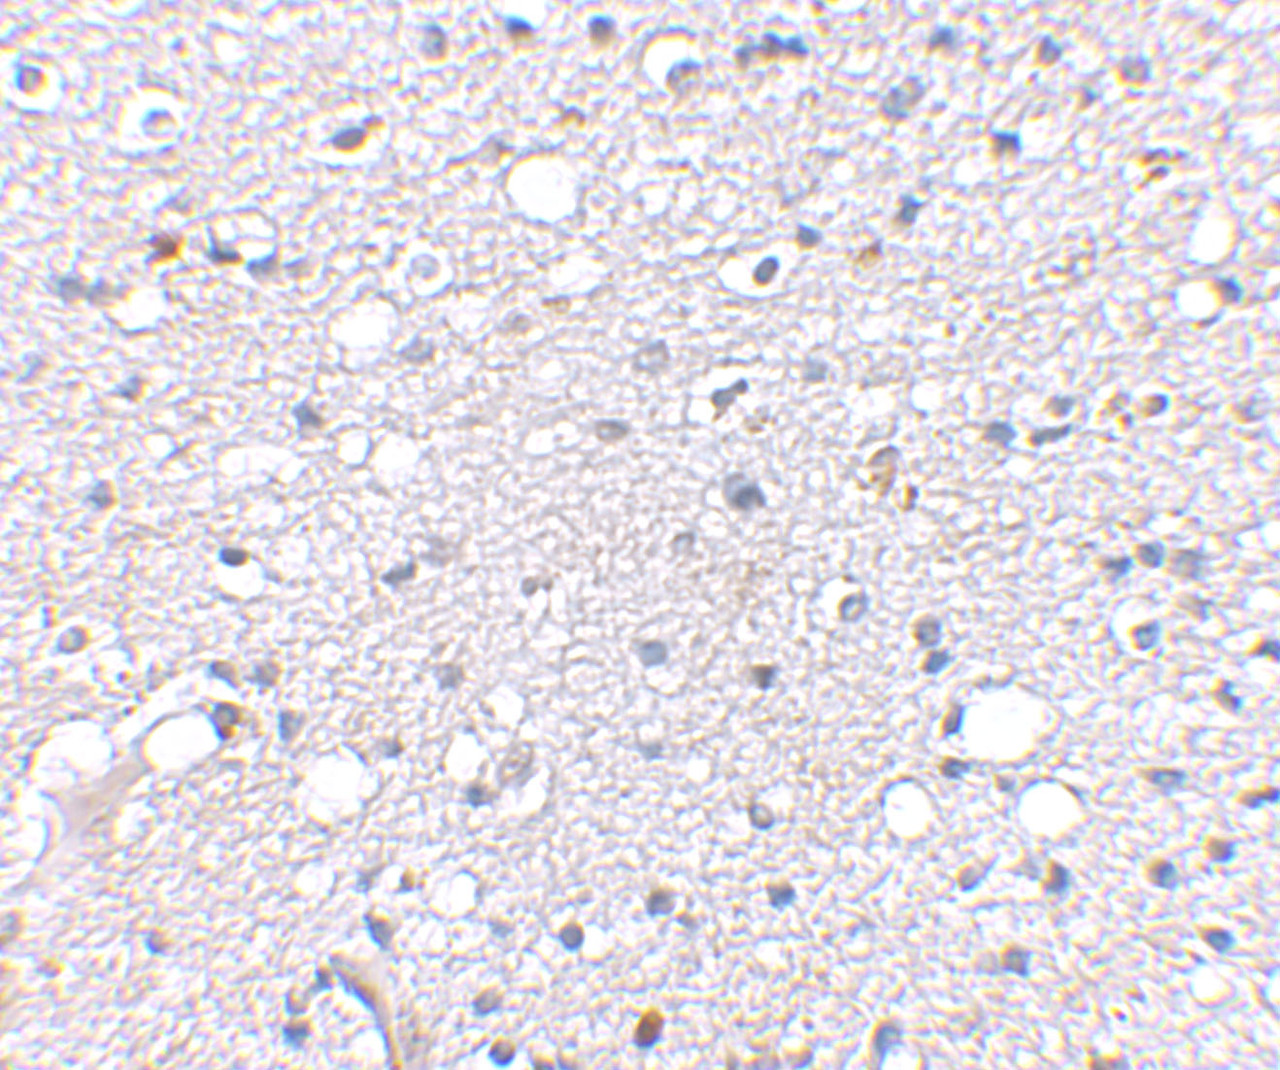 Immunohistochemical staining of human brain tissue using Sirt2 antibody at 2.5 ug/mL.